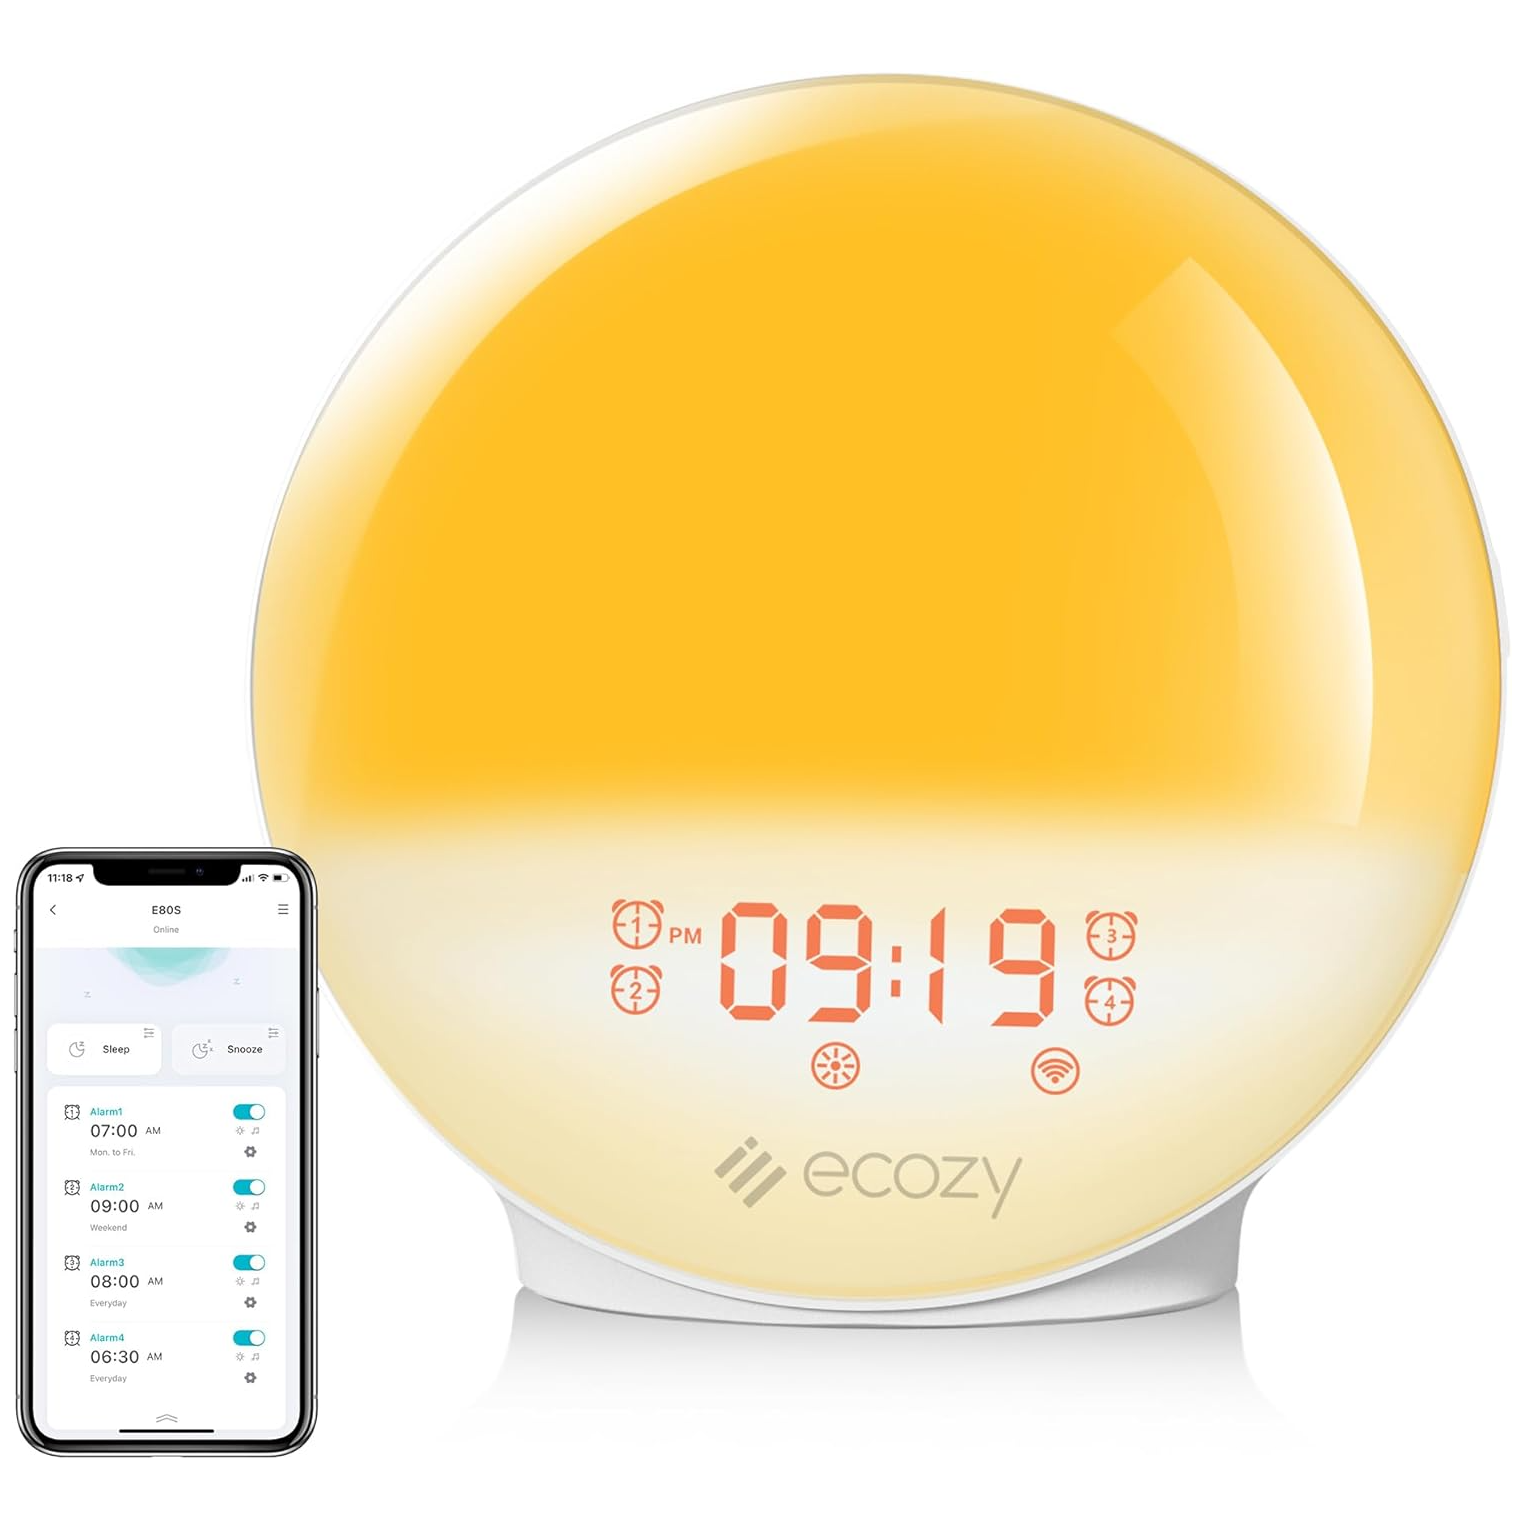 ecozy sunrise alarm clock beside app